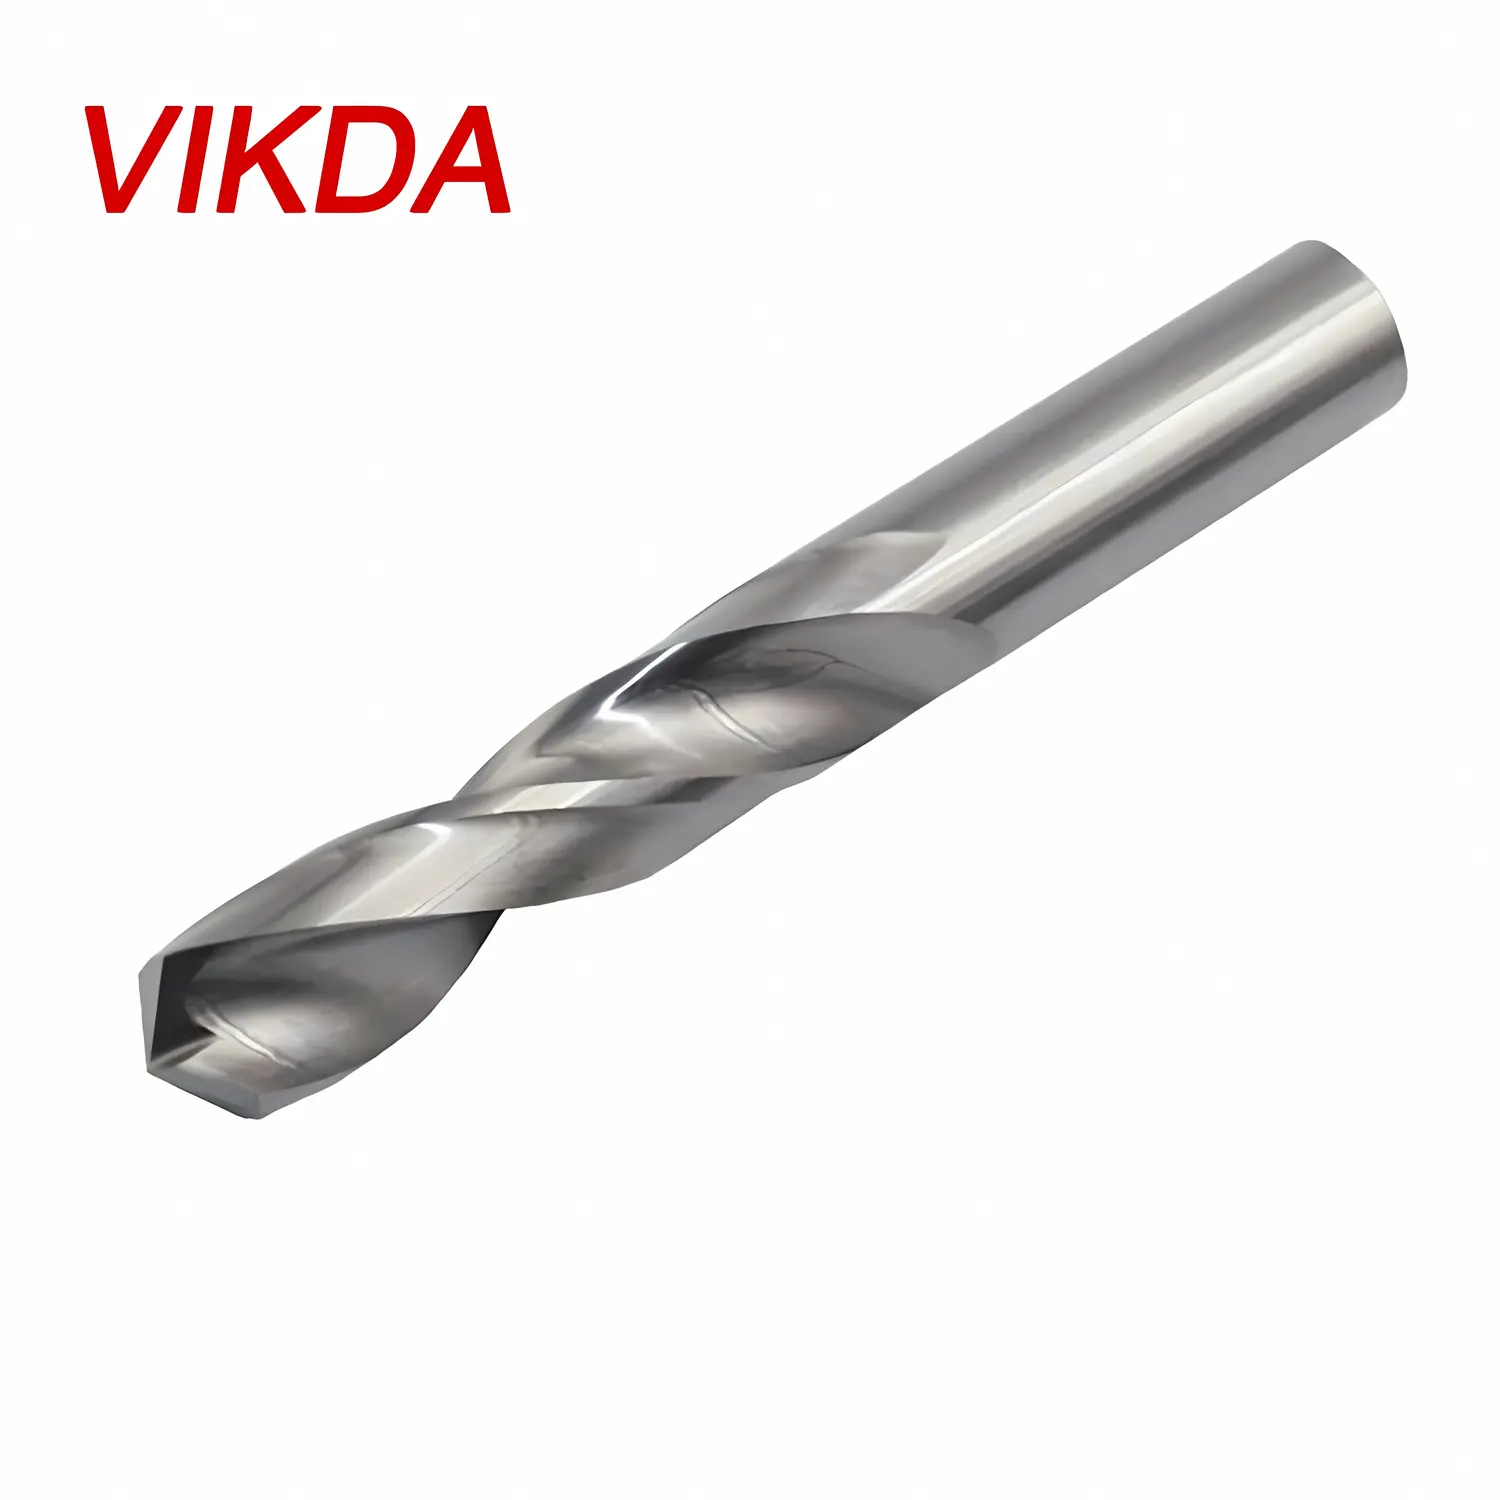 Vikda 55 degree tungsten steel straight shank twist drill bit Metal carbide drill bit